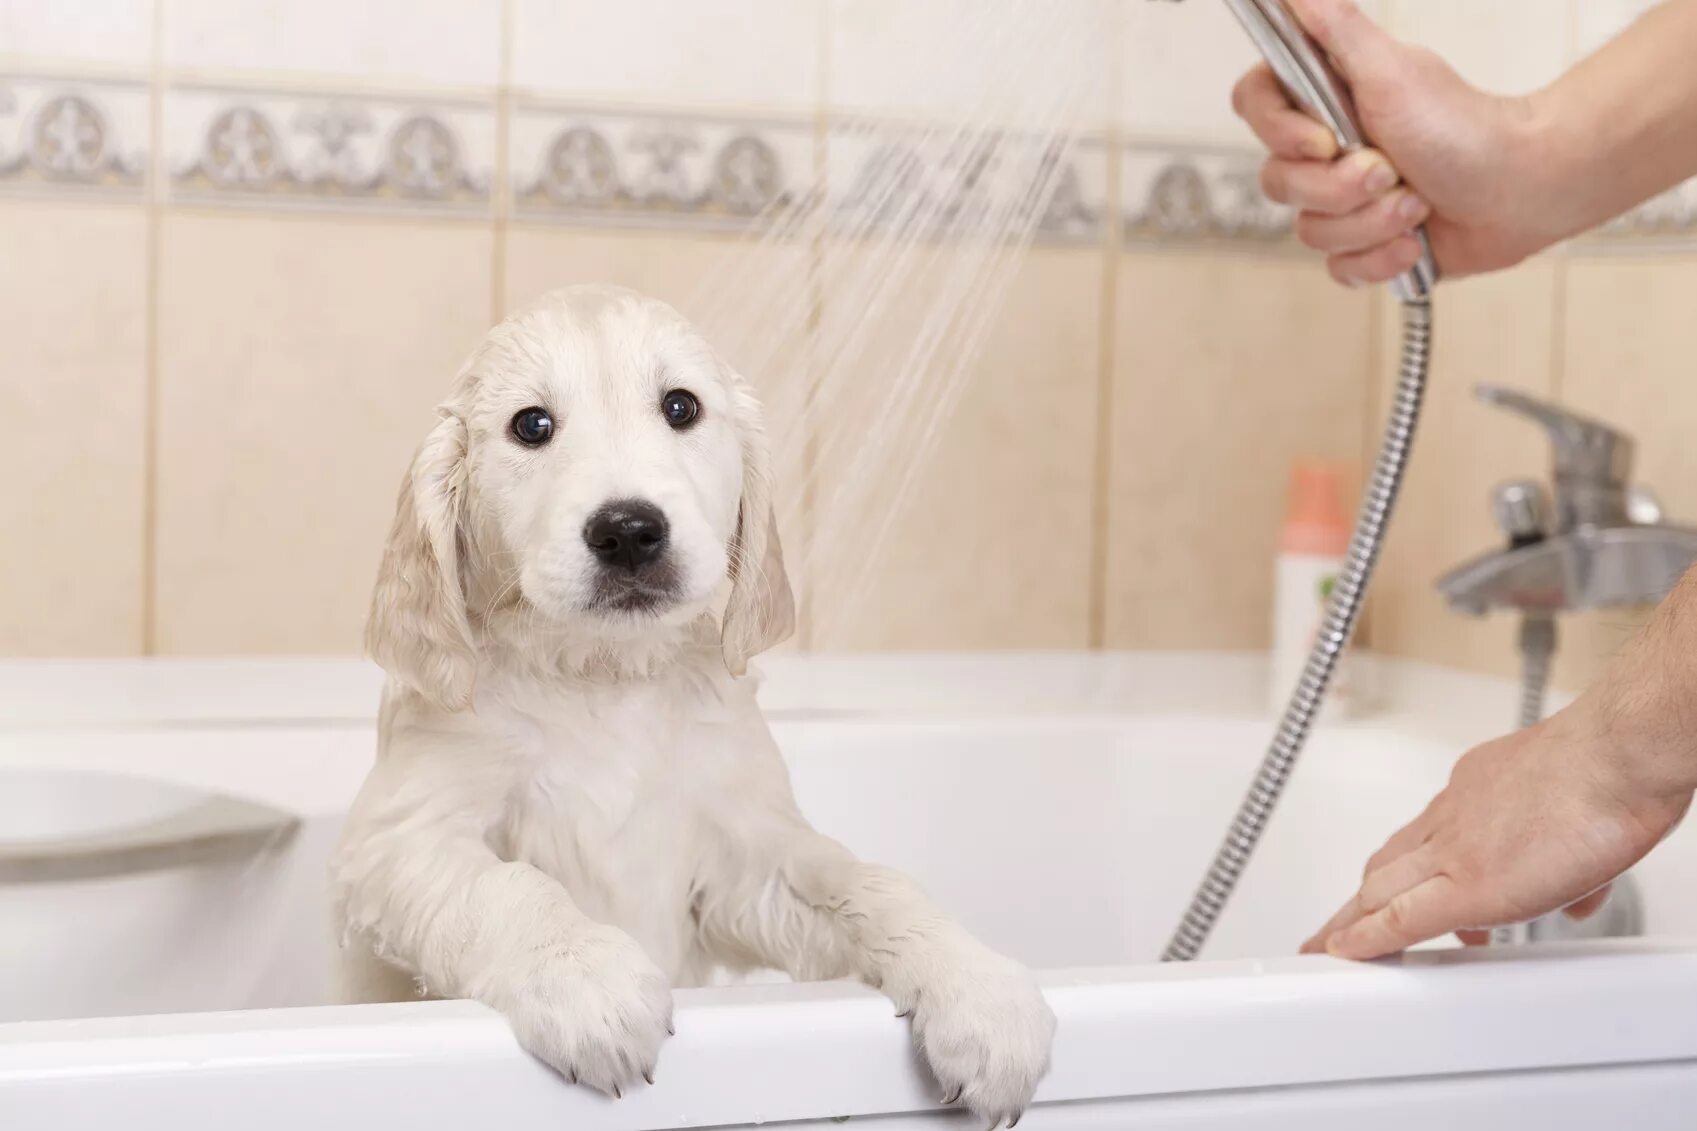 Мытье собаки. Собака в ванной. Для мытья собаки в ванной. Собака моется.